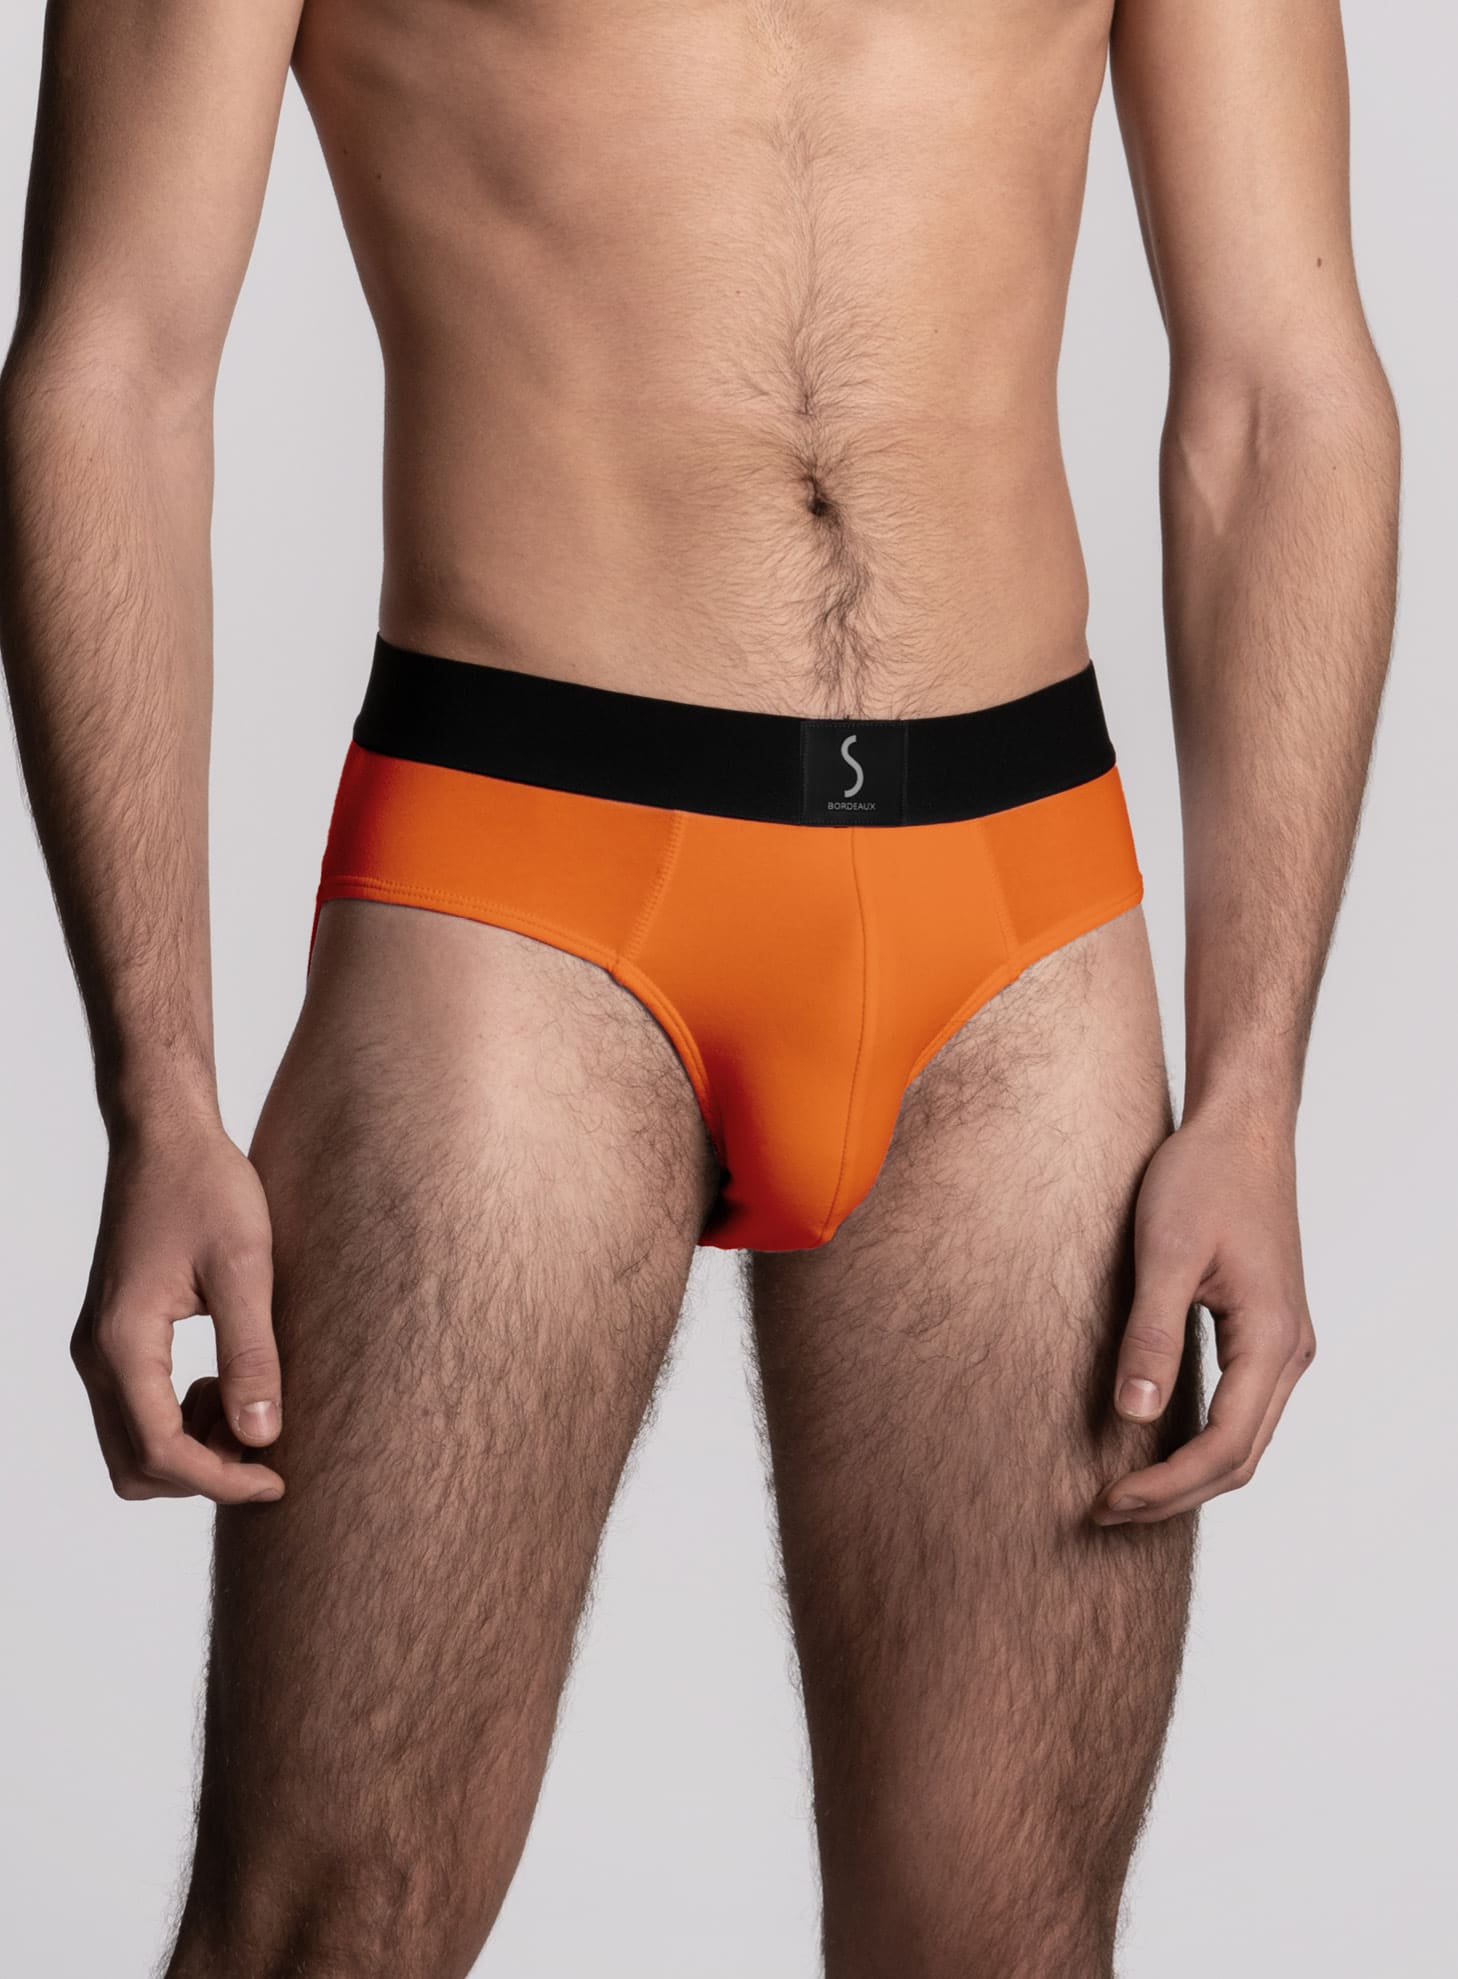 mannequin homme portant un Slip orange pour homme aumale de la marque S BORDEAUX